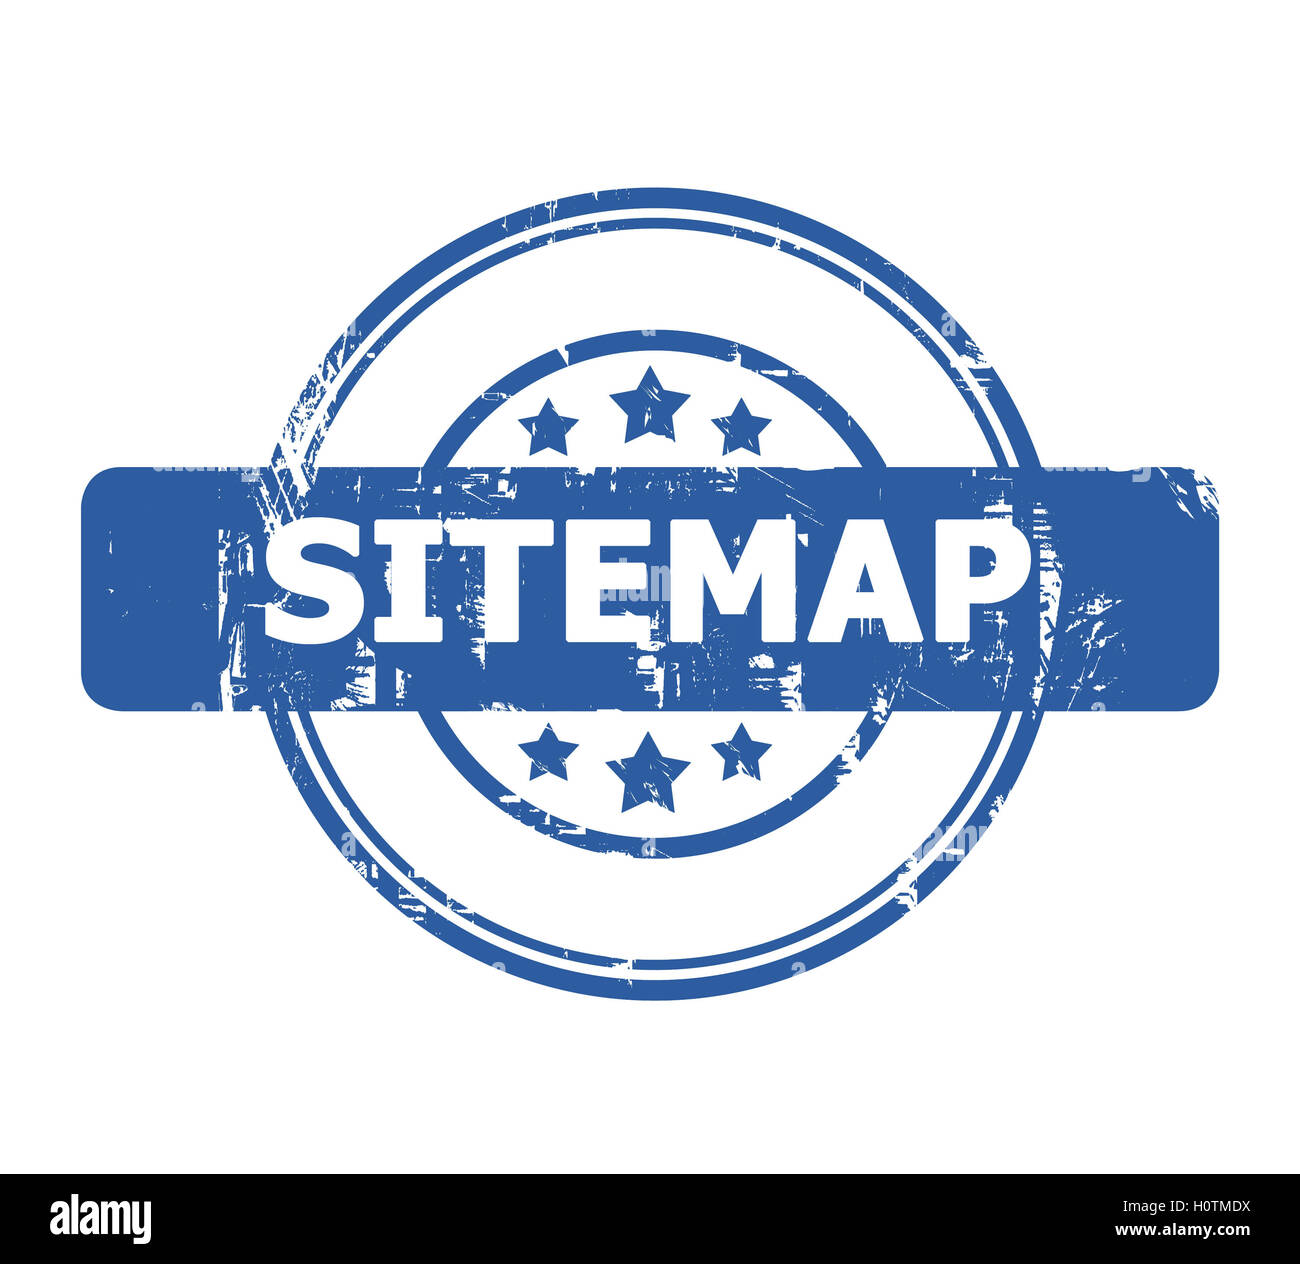 Sitemap-Stempel mit Sternen isoliert auf einem weißen Hintergrund. Stockfoto